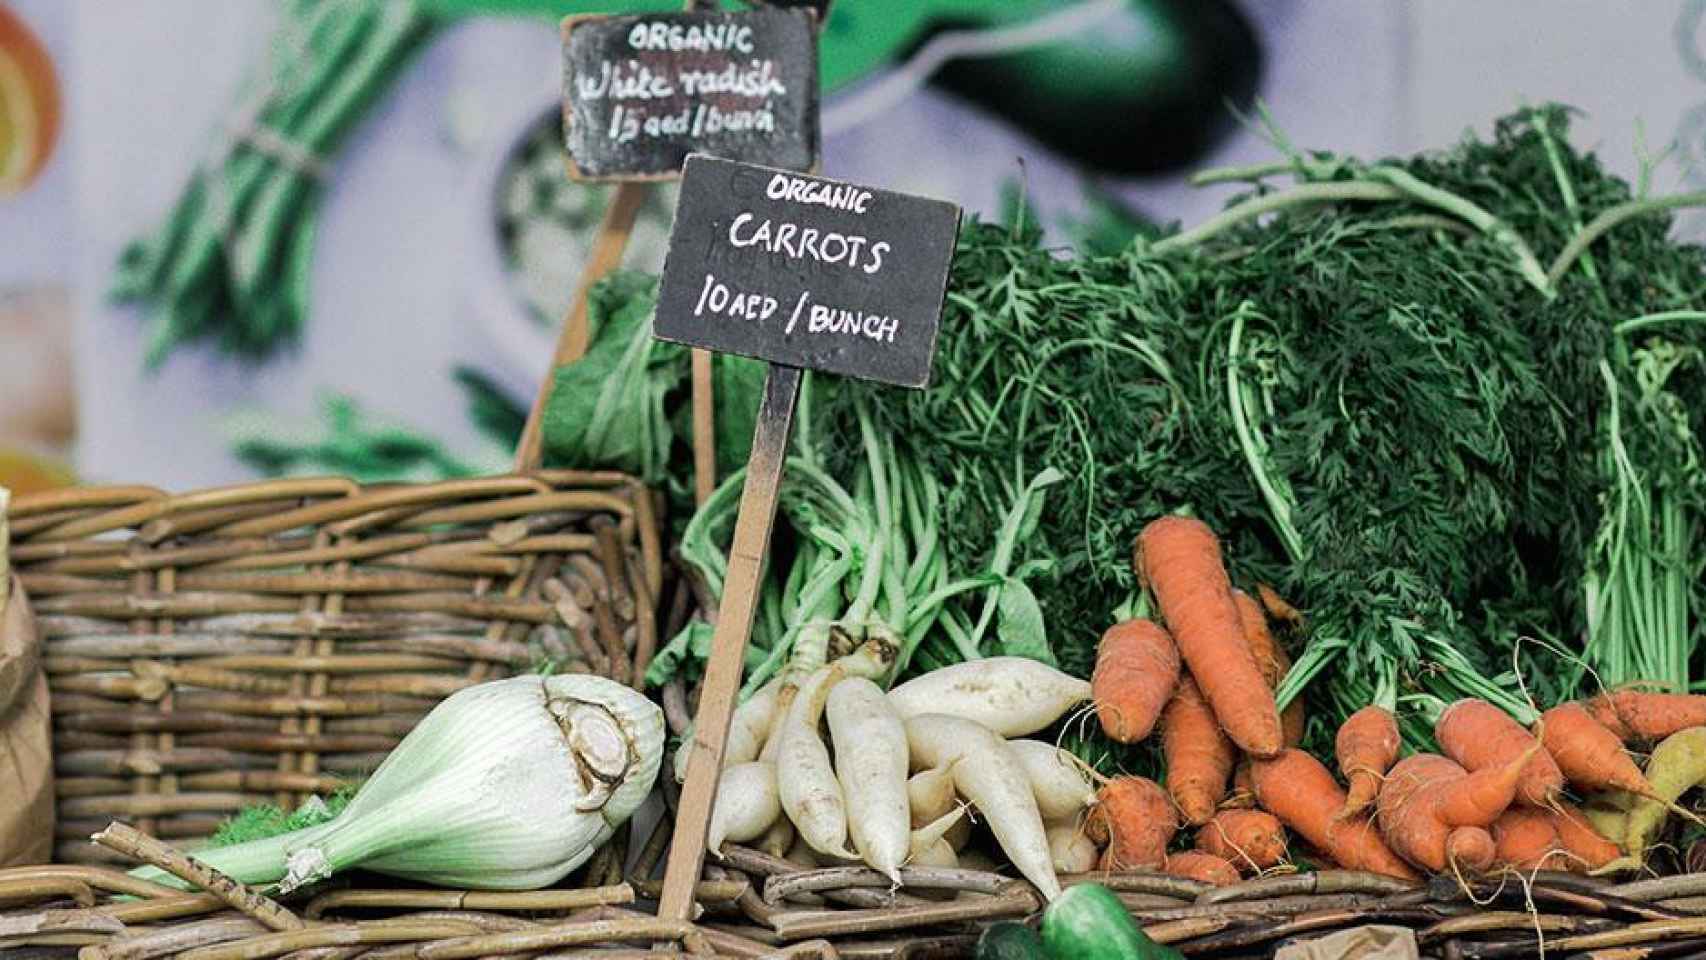 Zanahorias y verduras, los alimentos desperdiciados que contribuyen al cambio climático / UNSPLASH